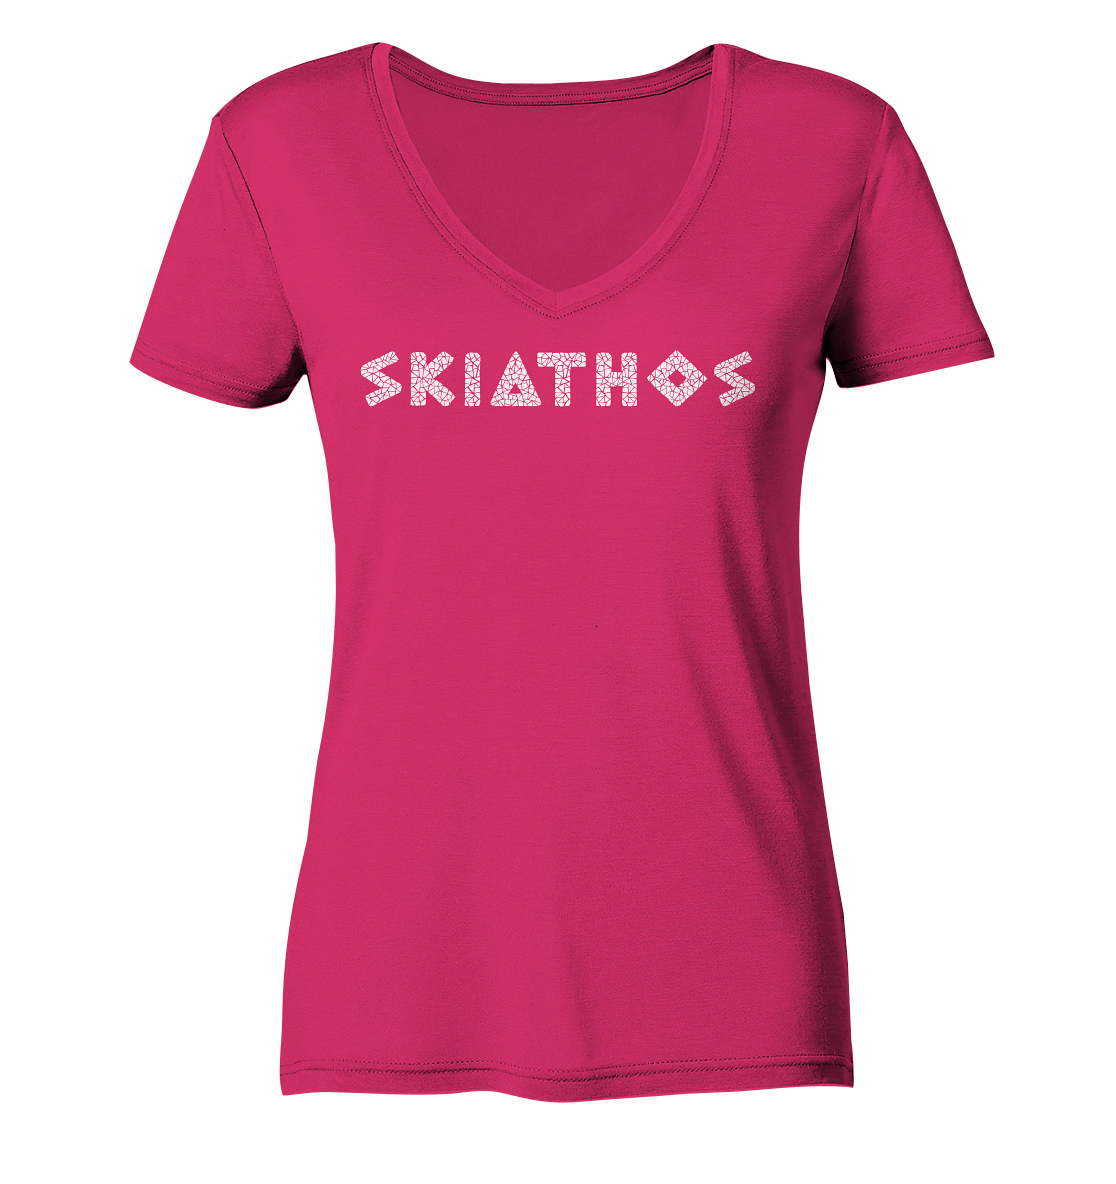 Skiathos Mosaic - Ladies Organic V-Neck Shirt